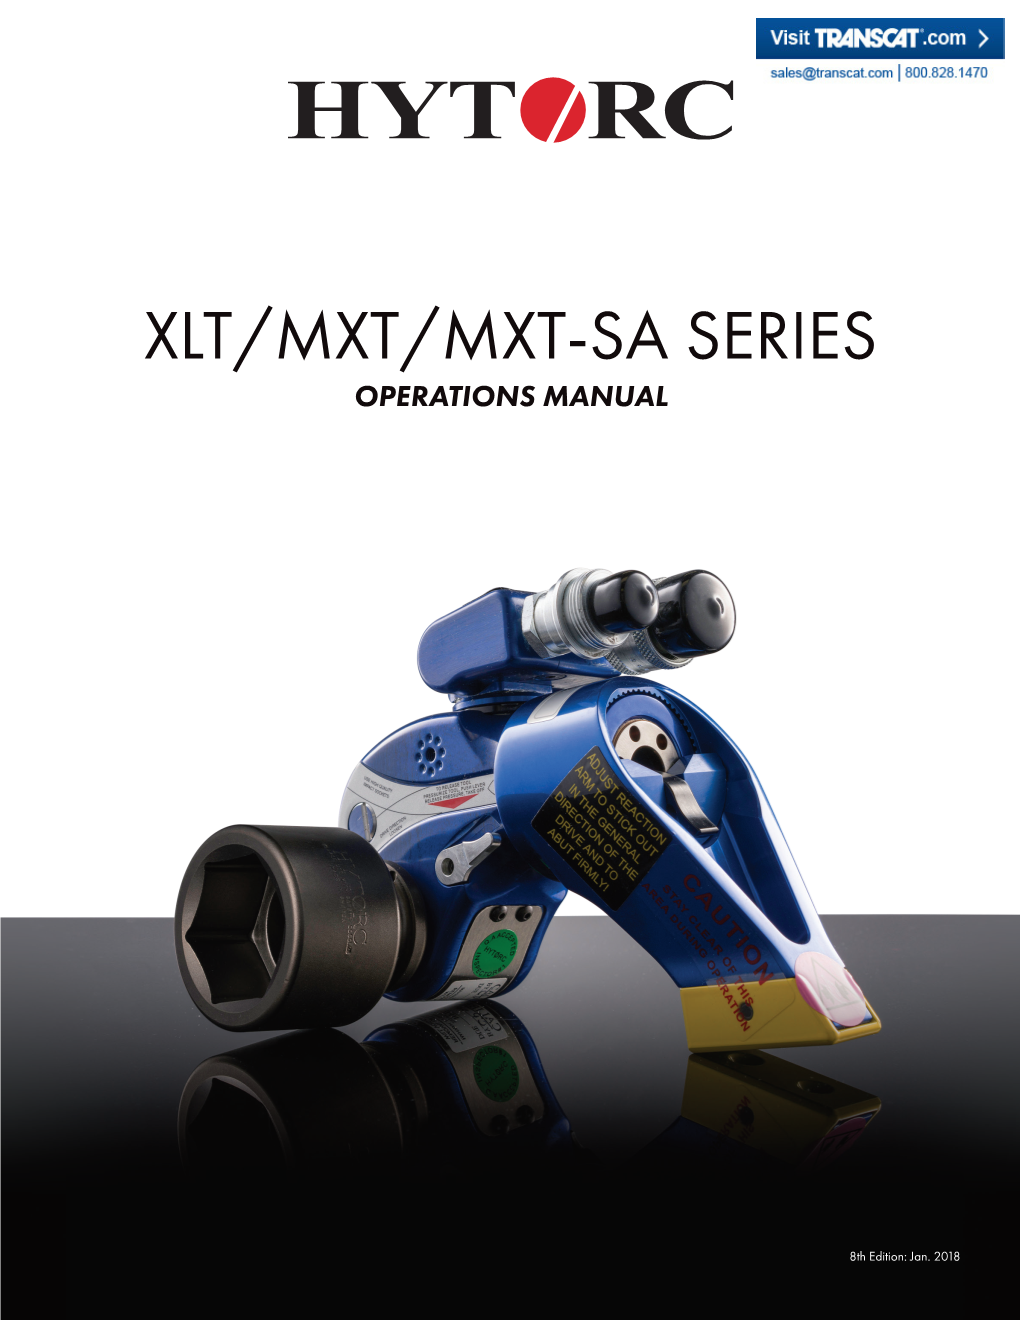 Xlt/Mxt/Mxt-Sa Series Operations Manual